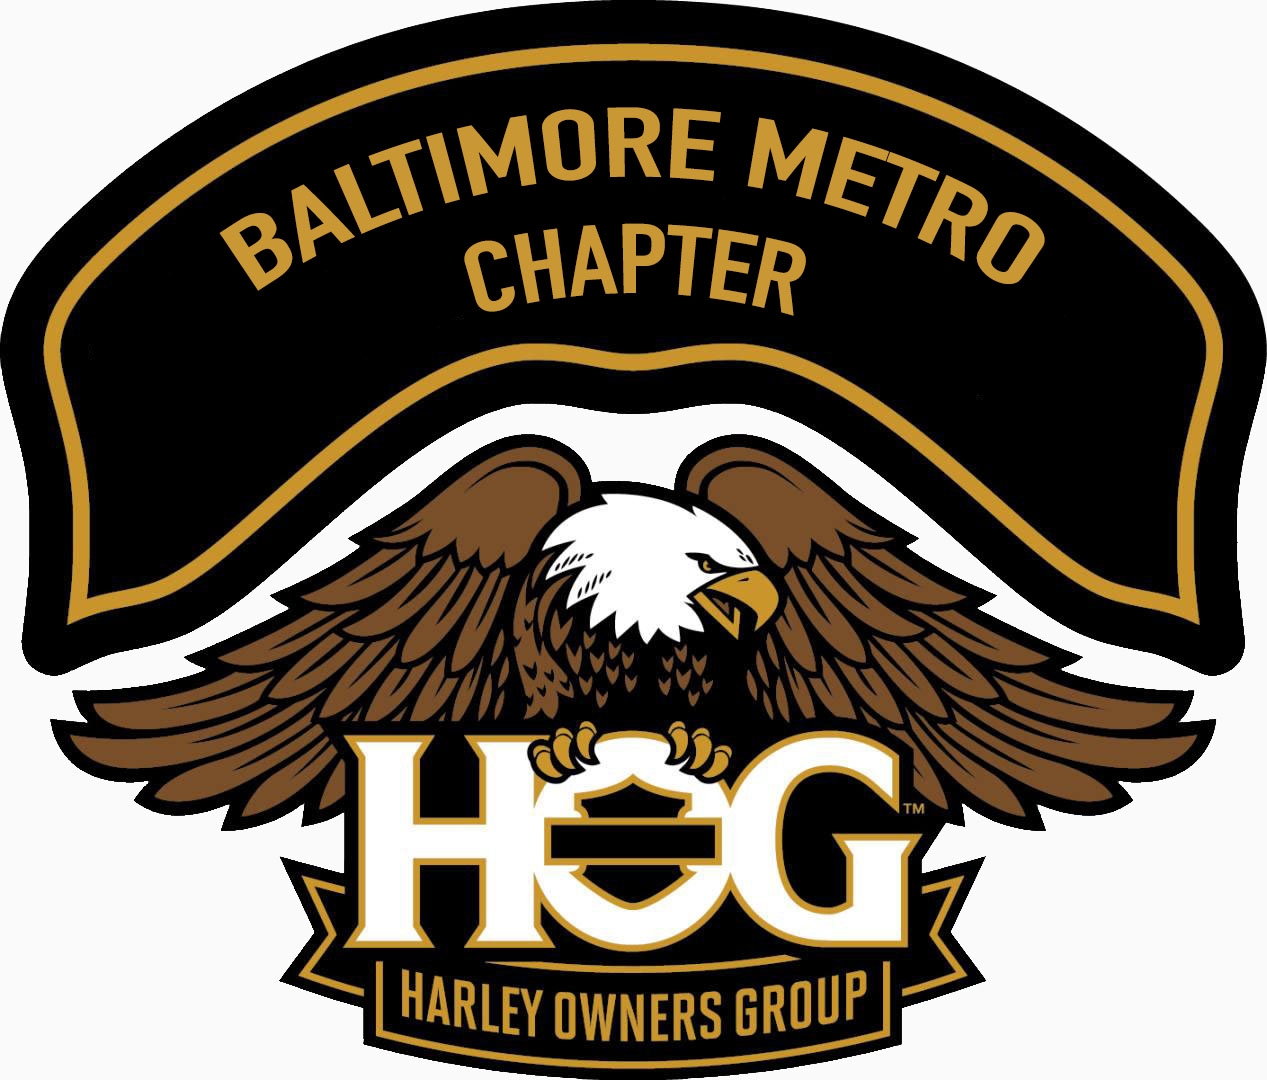 Baltimore Metro HOG